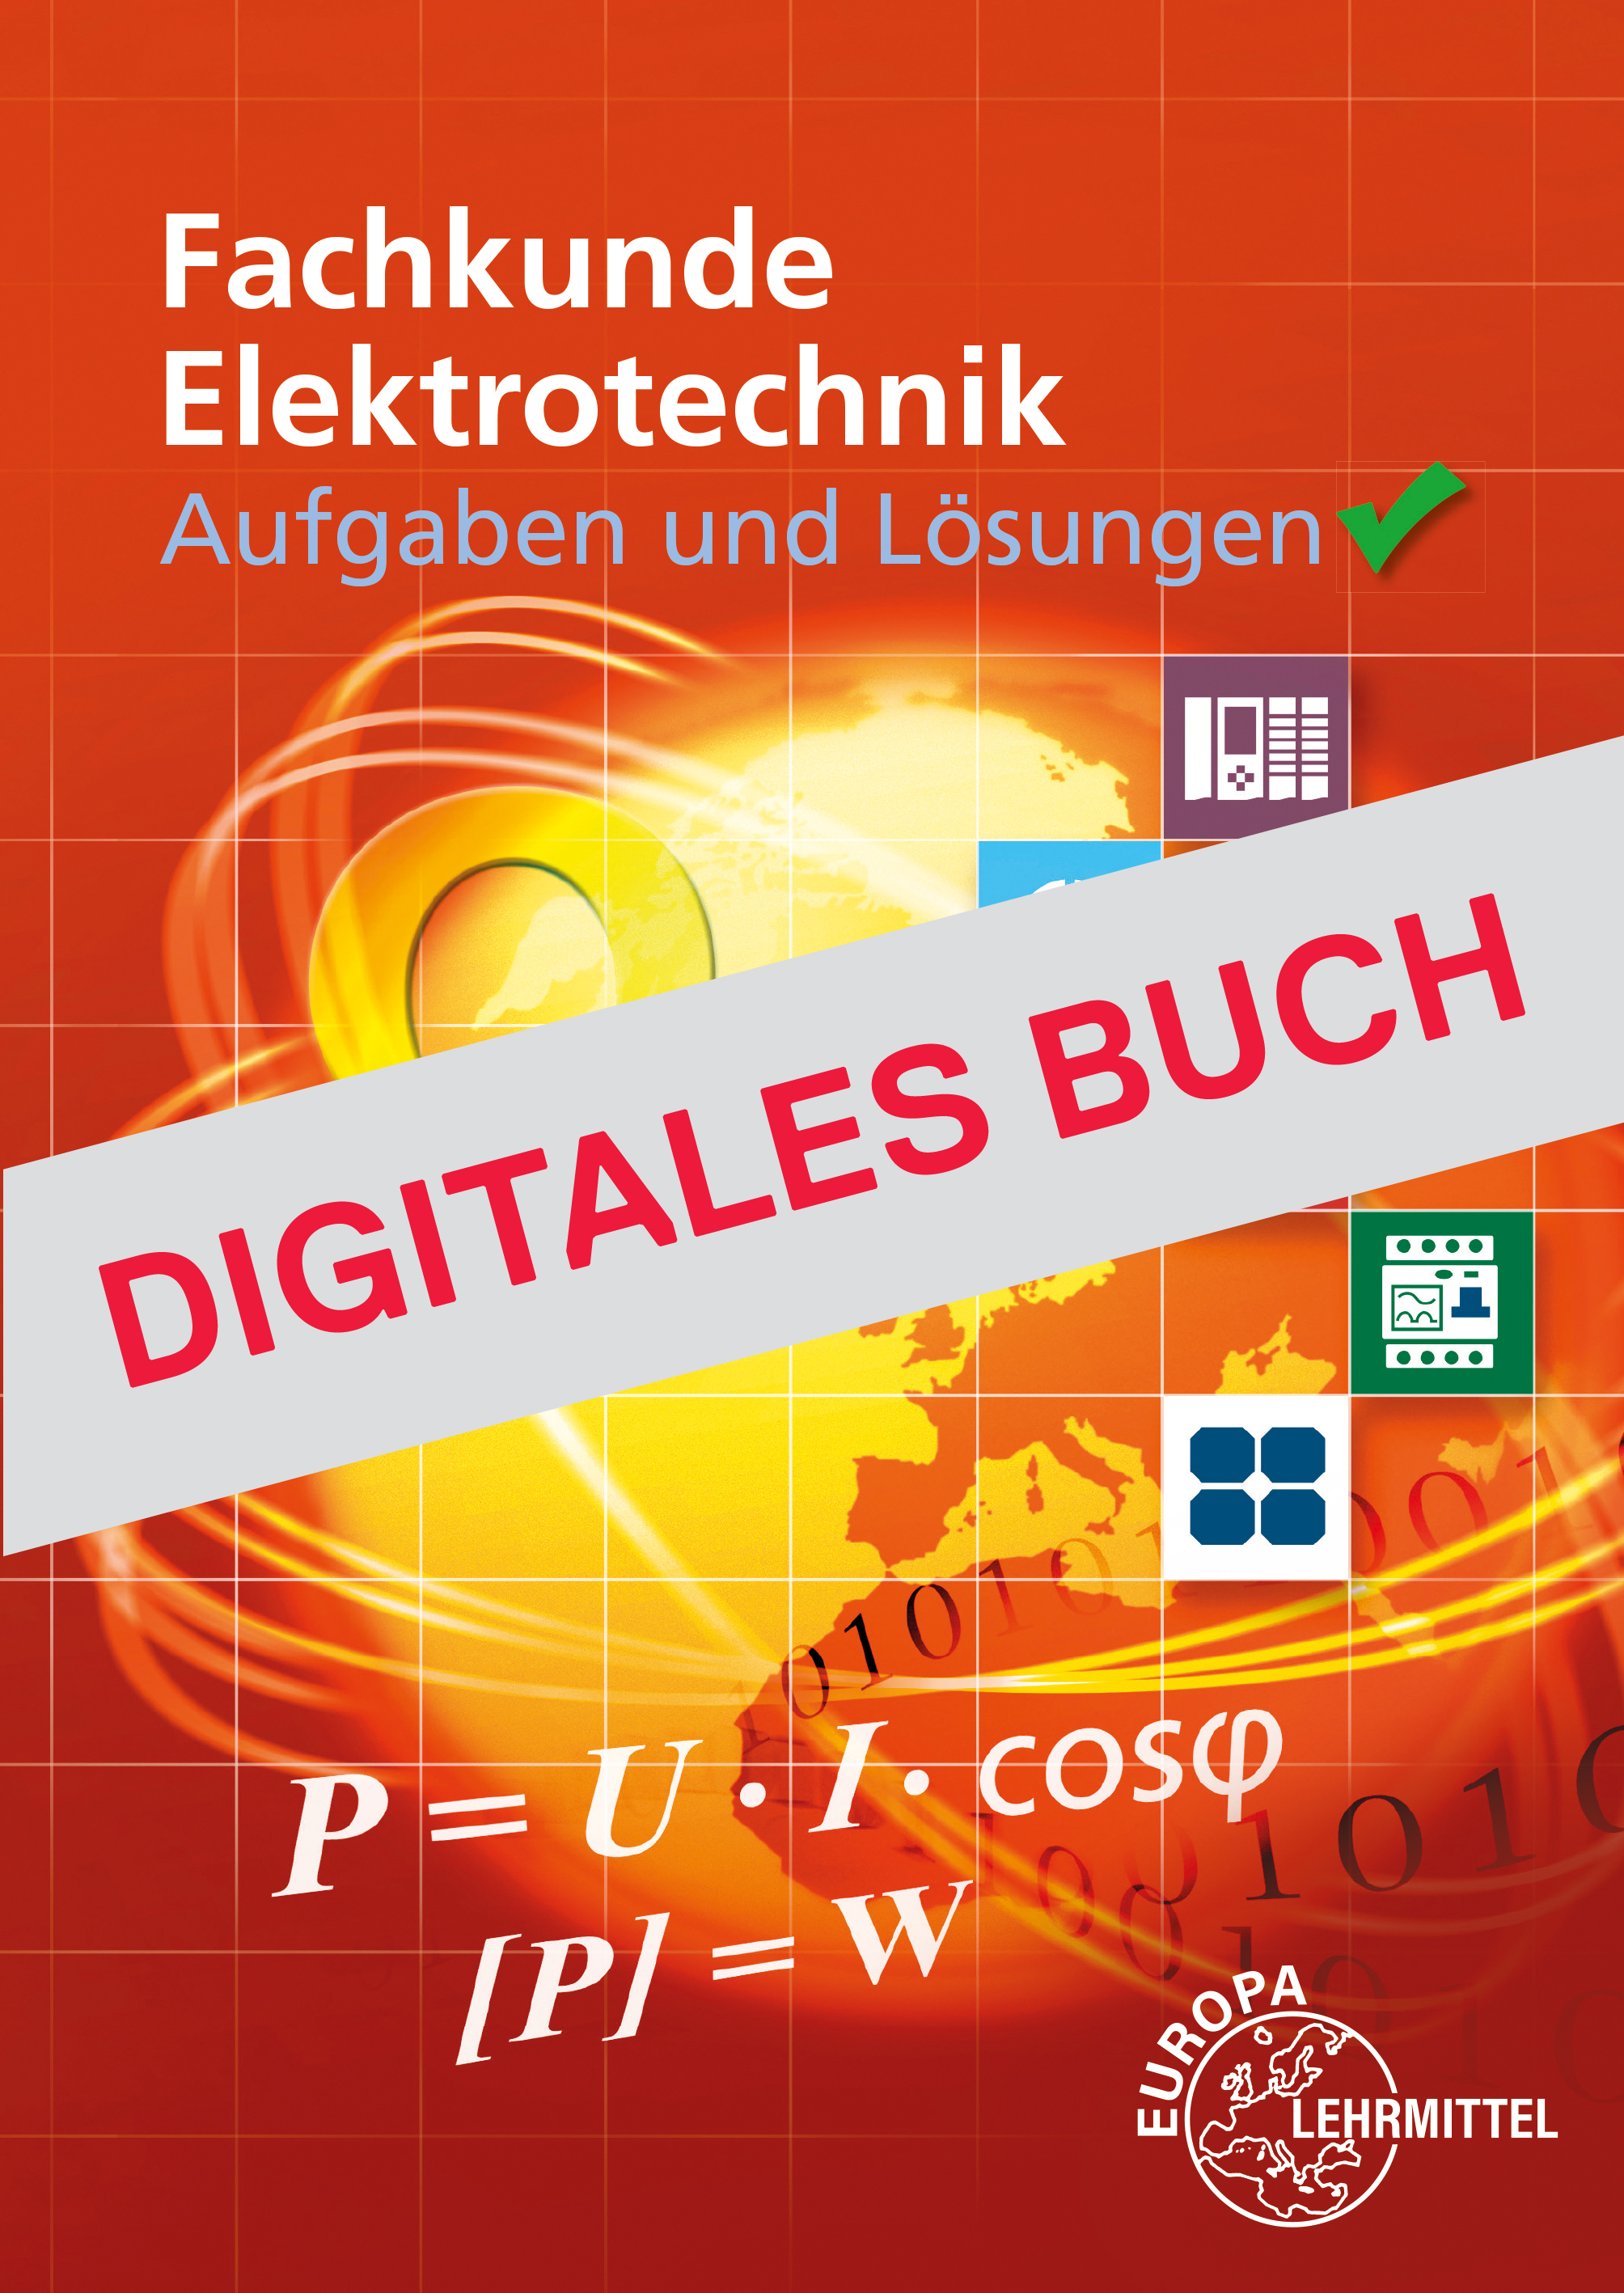 Aufgaben und Lösungen zur Fachkunde Elektrotechnik - Digitales Buch